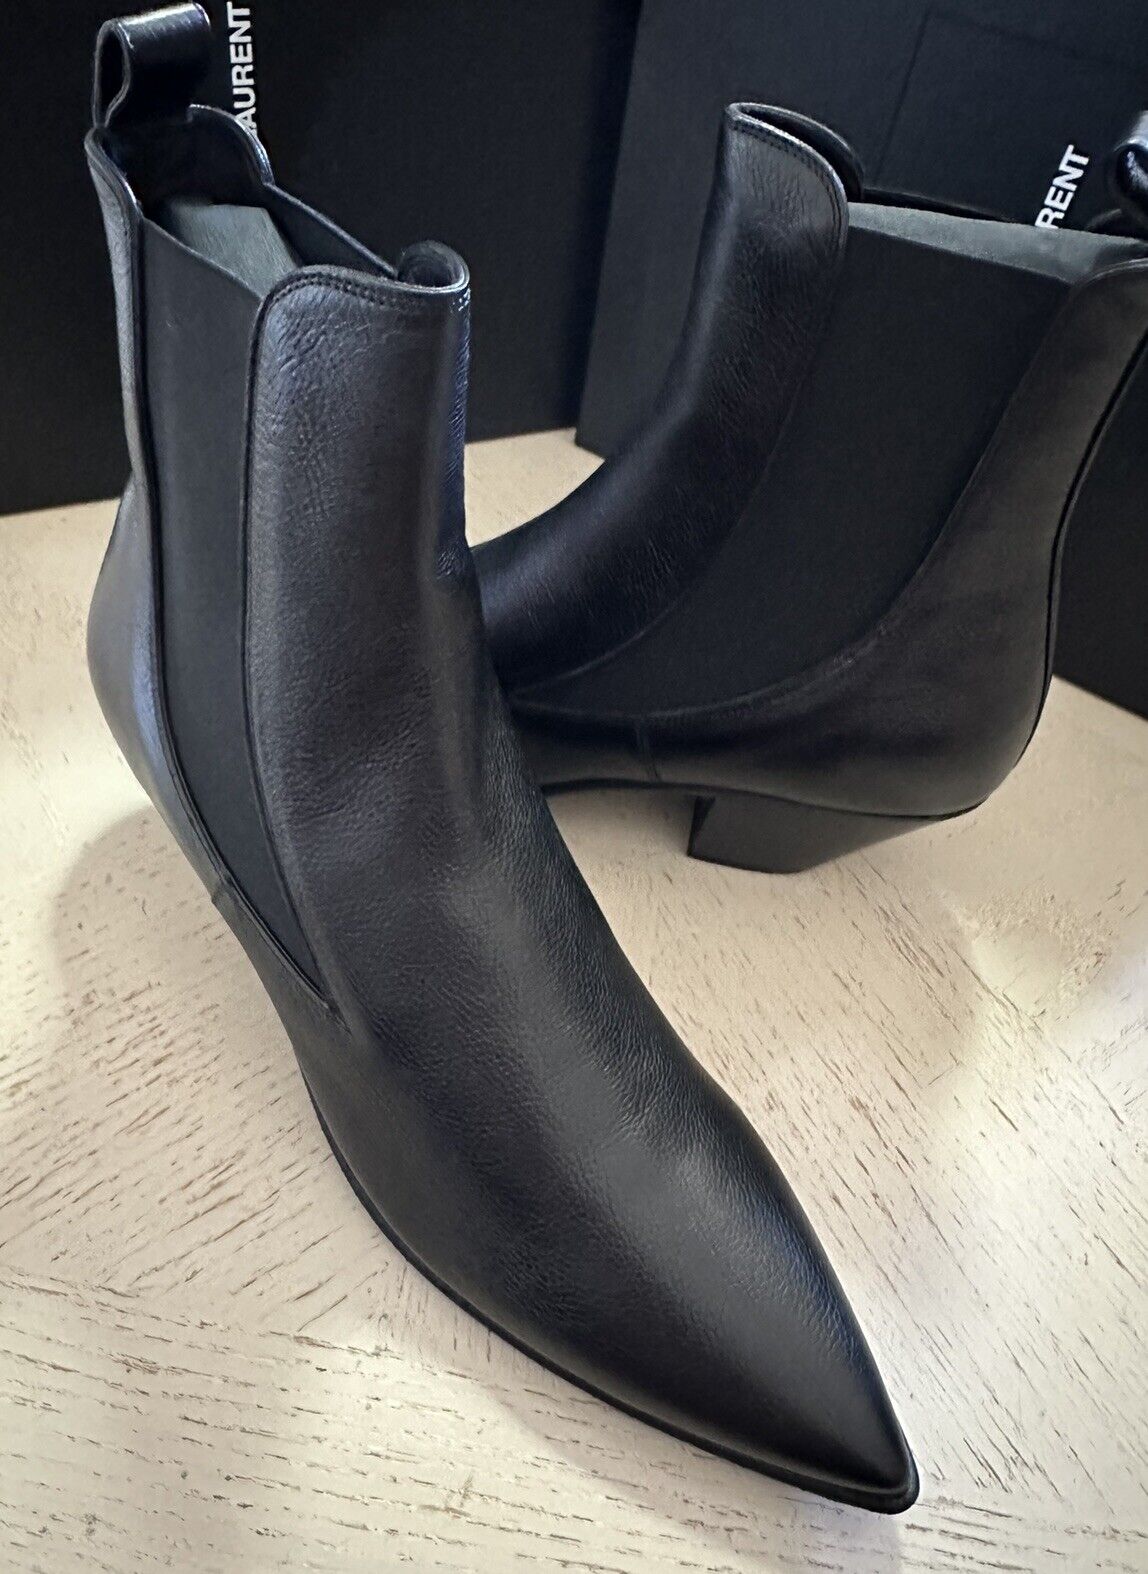 NIB $1195 Saint Laurent Men’s Leather Boots Shoes Black 12 US/45 Eu 685837